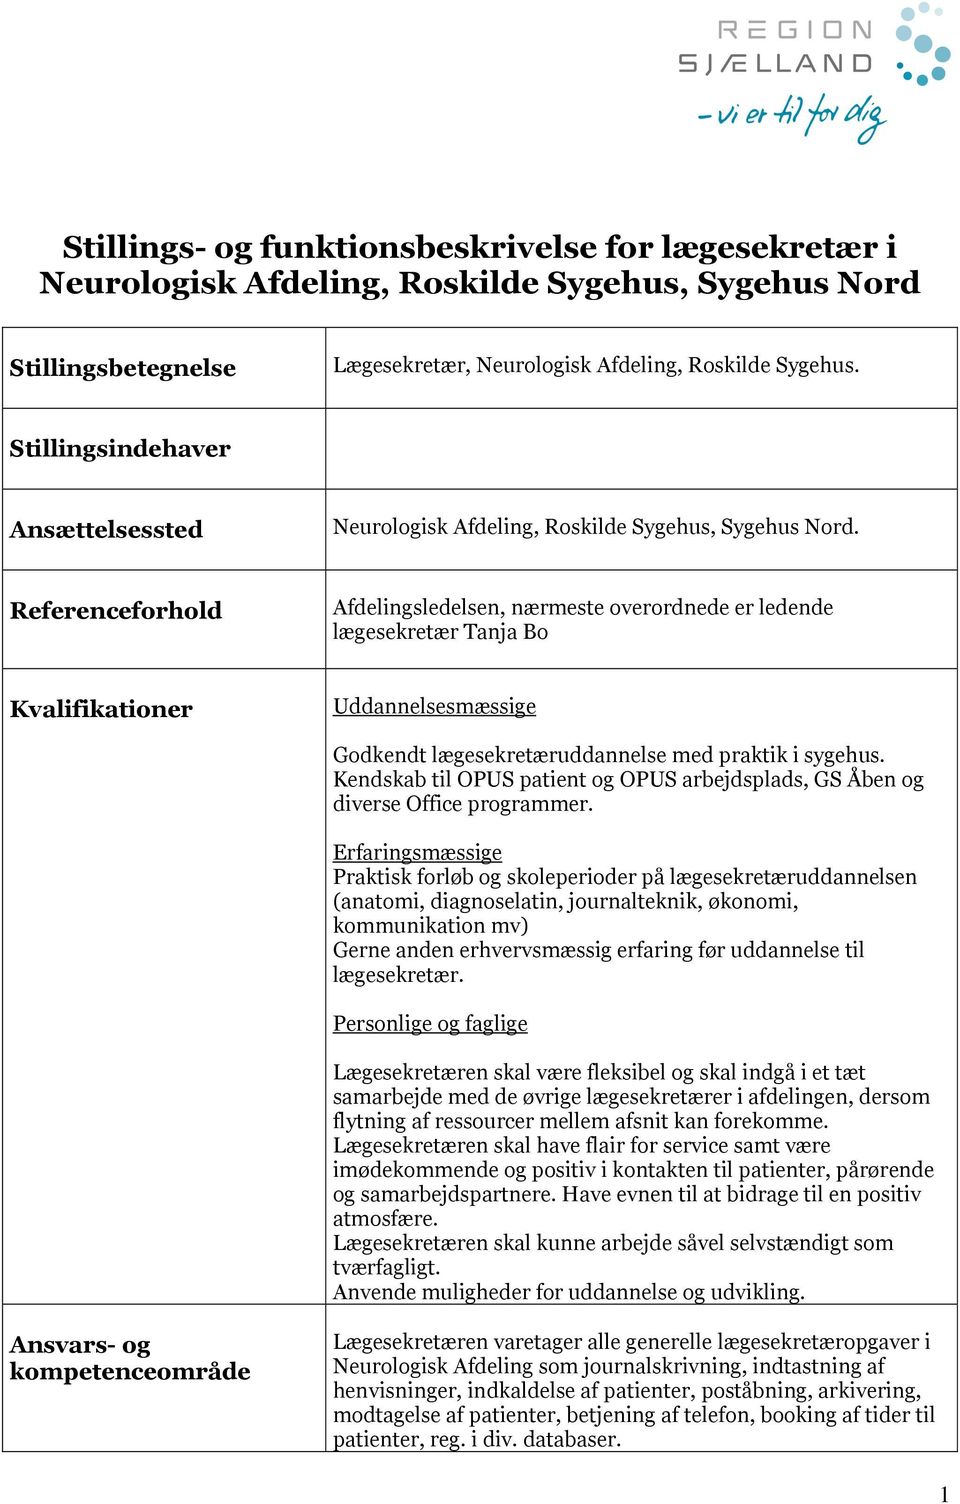 Stillings- og funktionsbeskrivelse for lægesekretær i Neurologisk Afdeling,  Roskilde Sygehus, Sygehus Nord - PDF Free Download